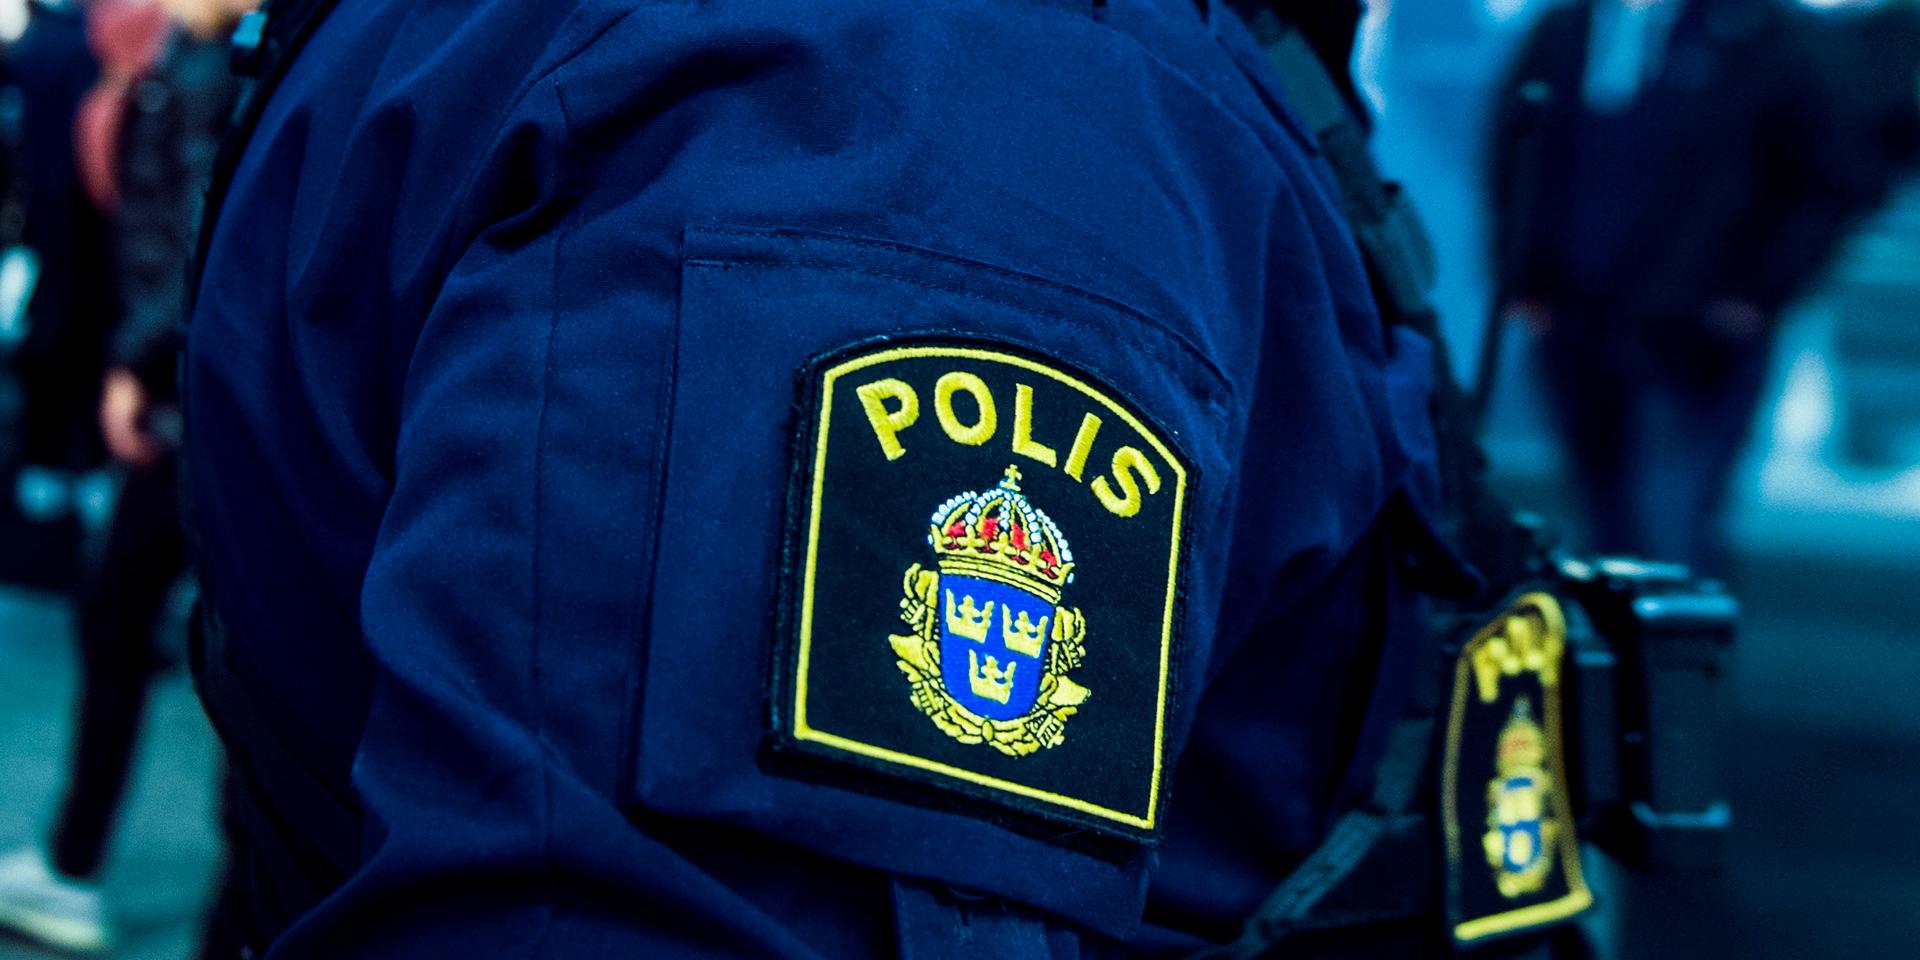 En man i 20-årsåldern har knivhuggits i centrala Göteborg. Skadorna bedöms vara allvarliga och mannen har förts till sjukhus med ambulans. Arkivbild.